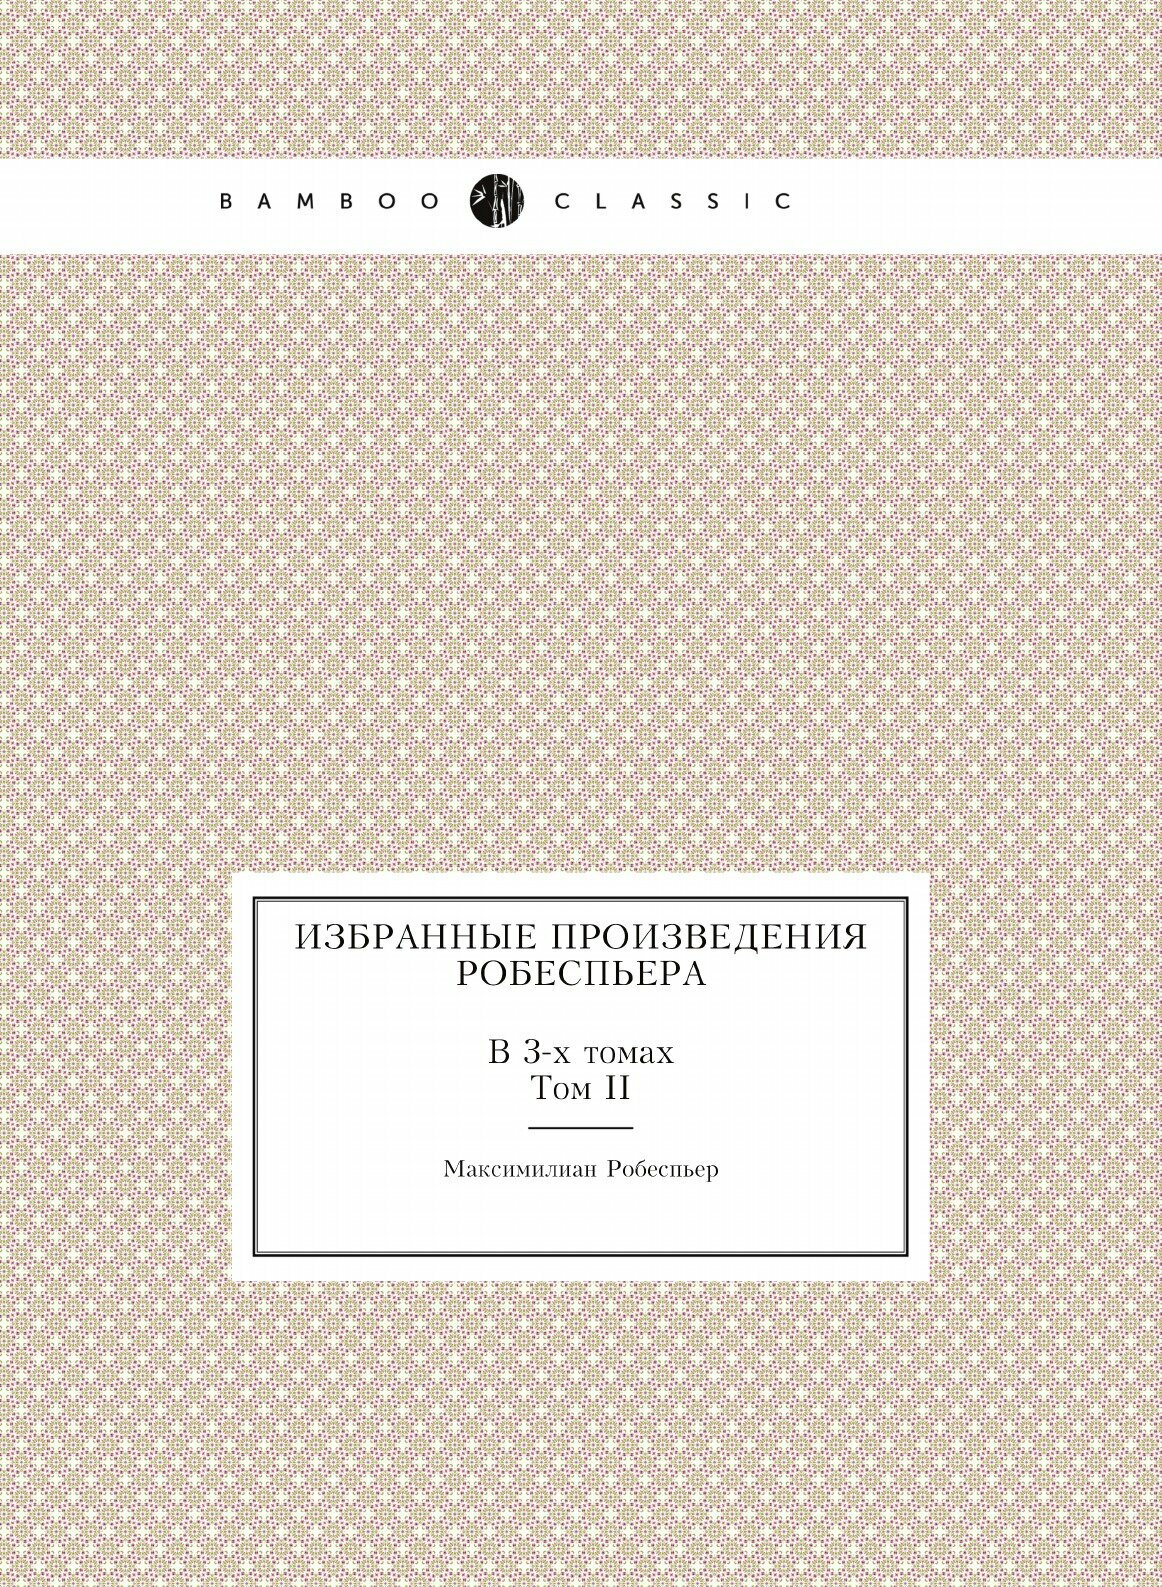 Избранные произведения Робеспьера. В 3-х томах. Том II